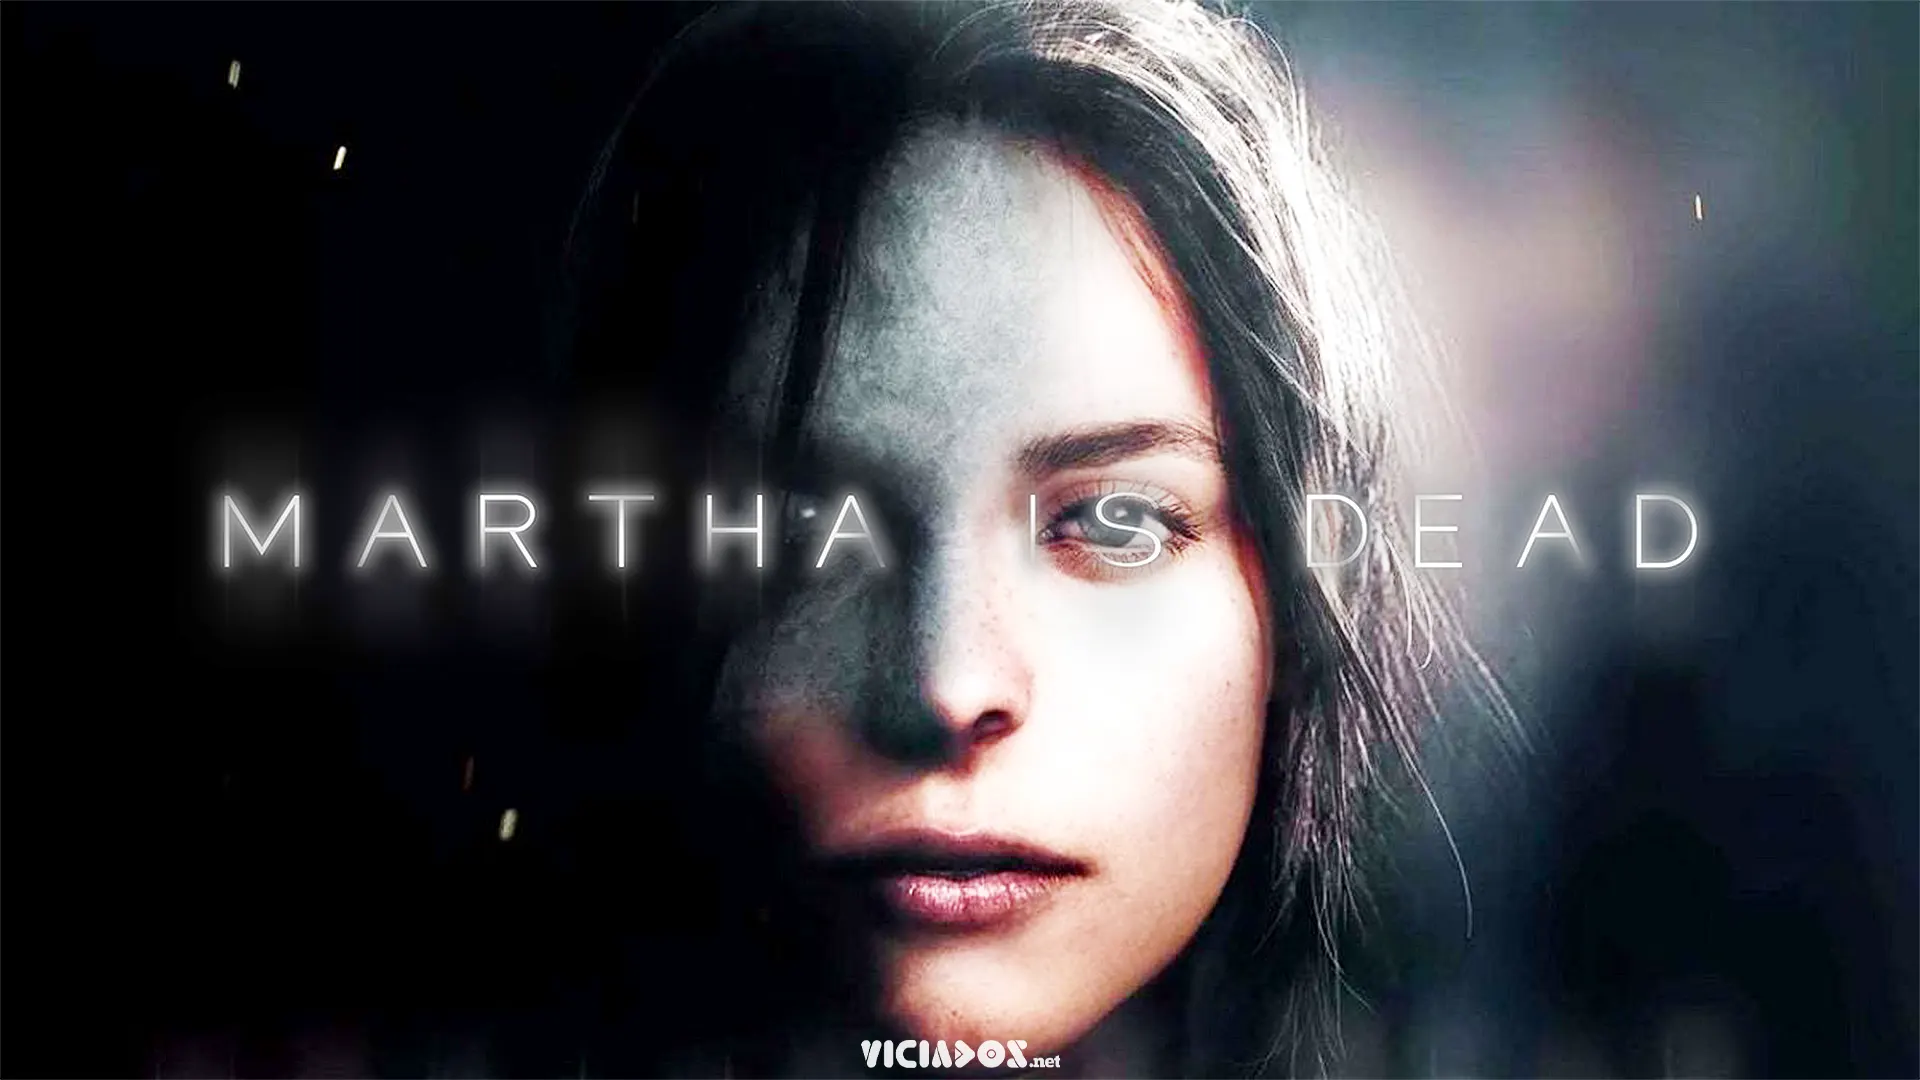 Martha is Dead é destaque nos lançamentos da semana 2022 Viciados